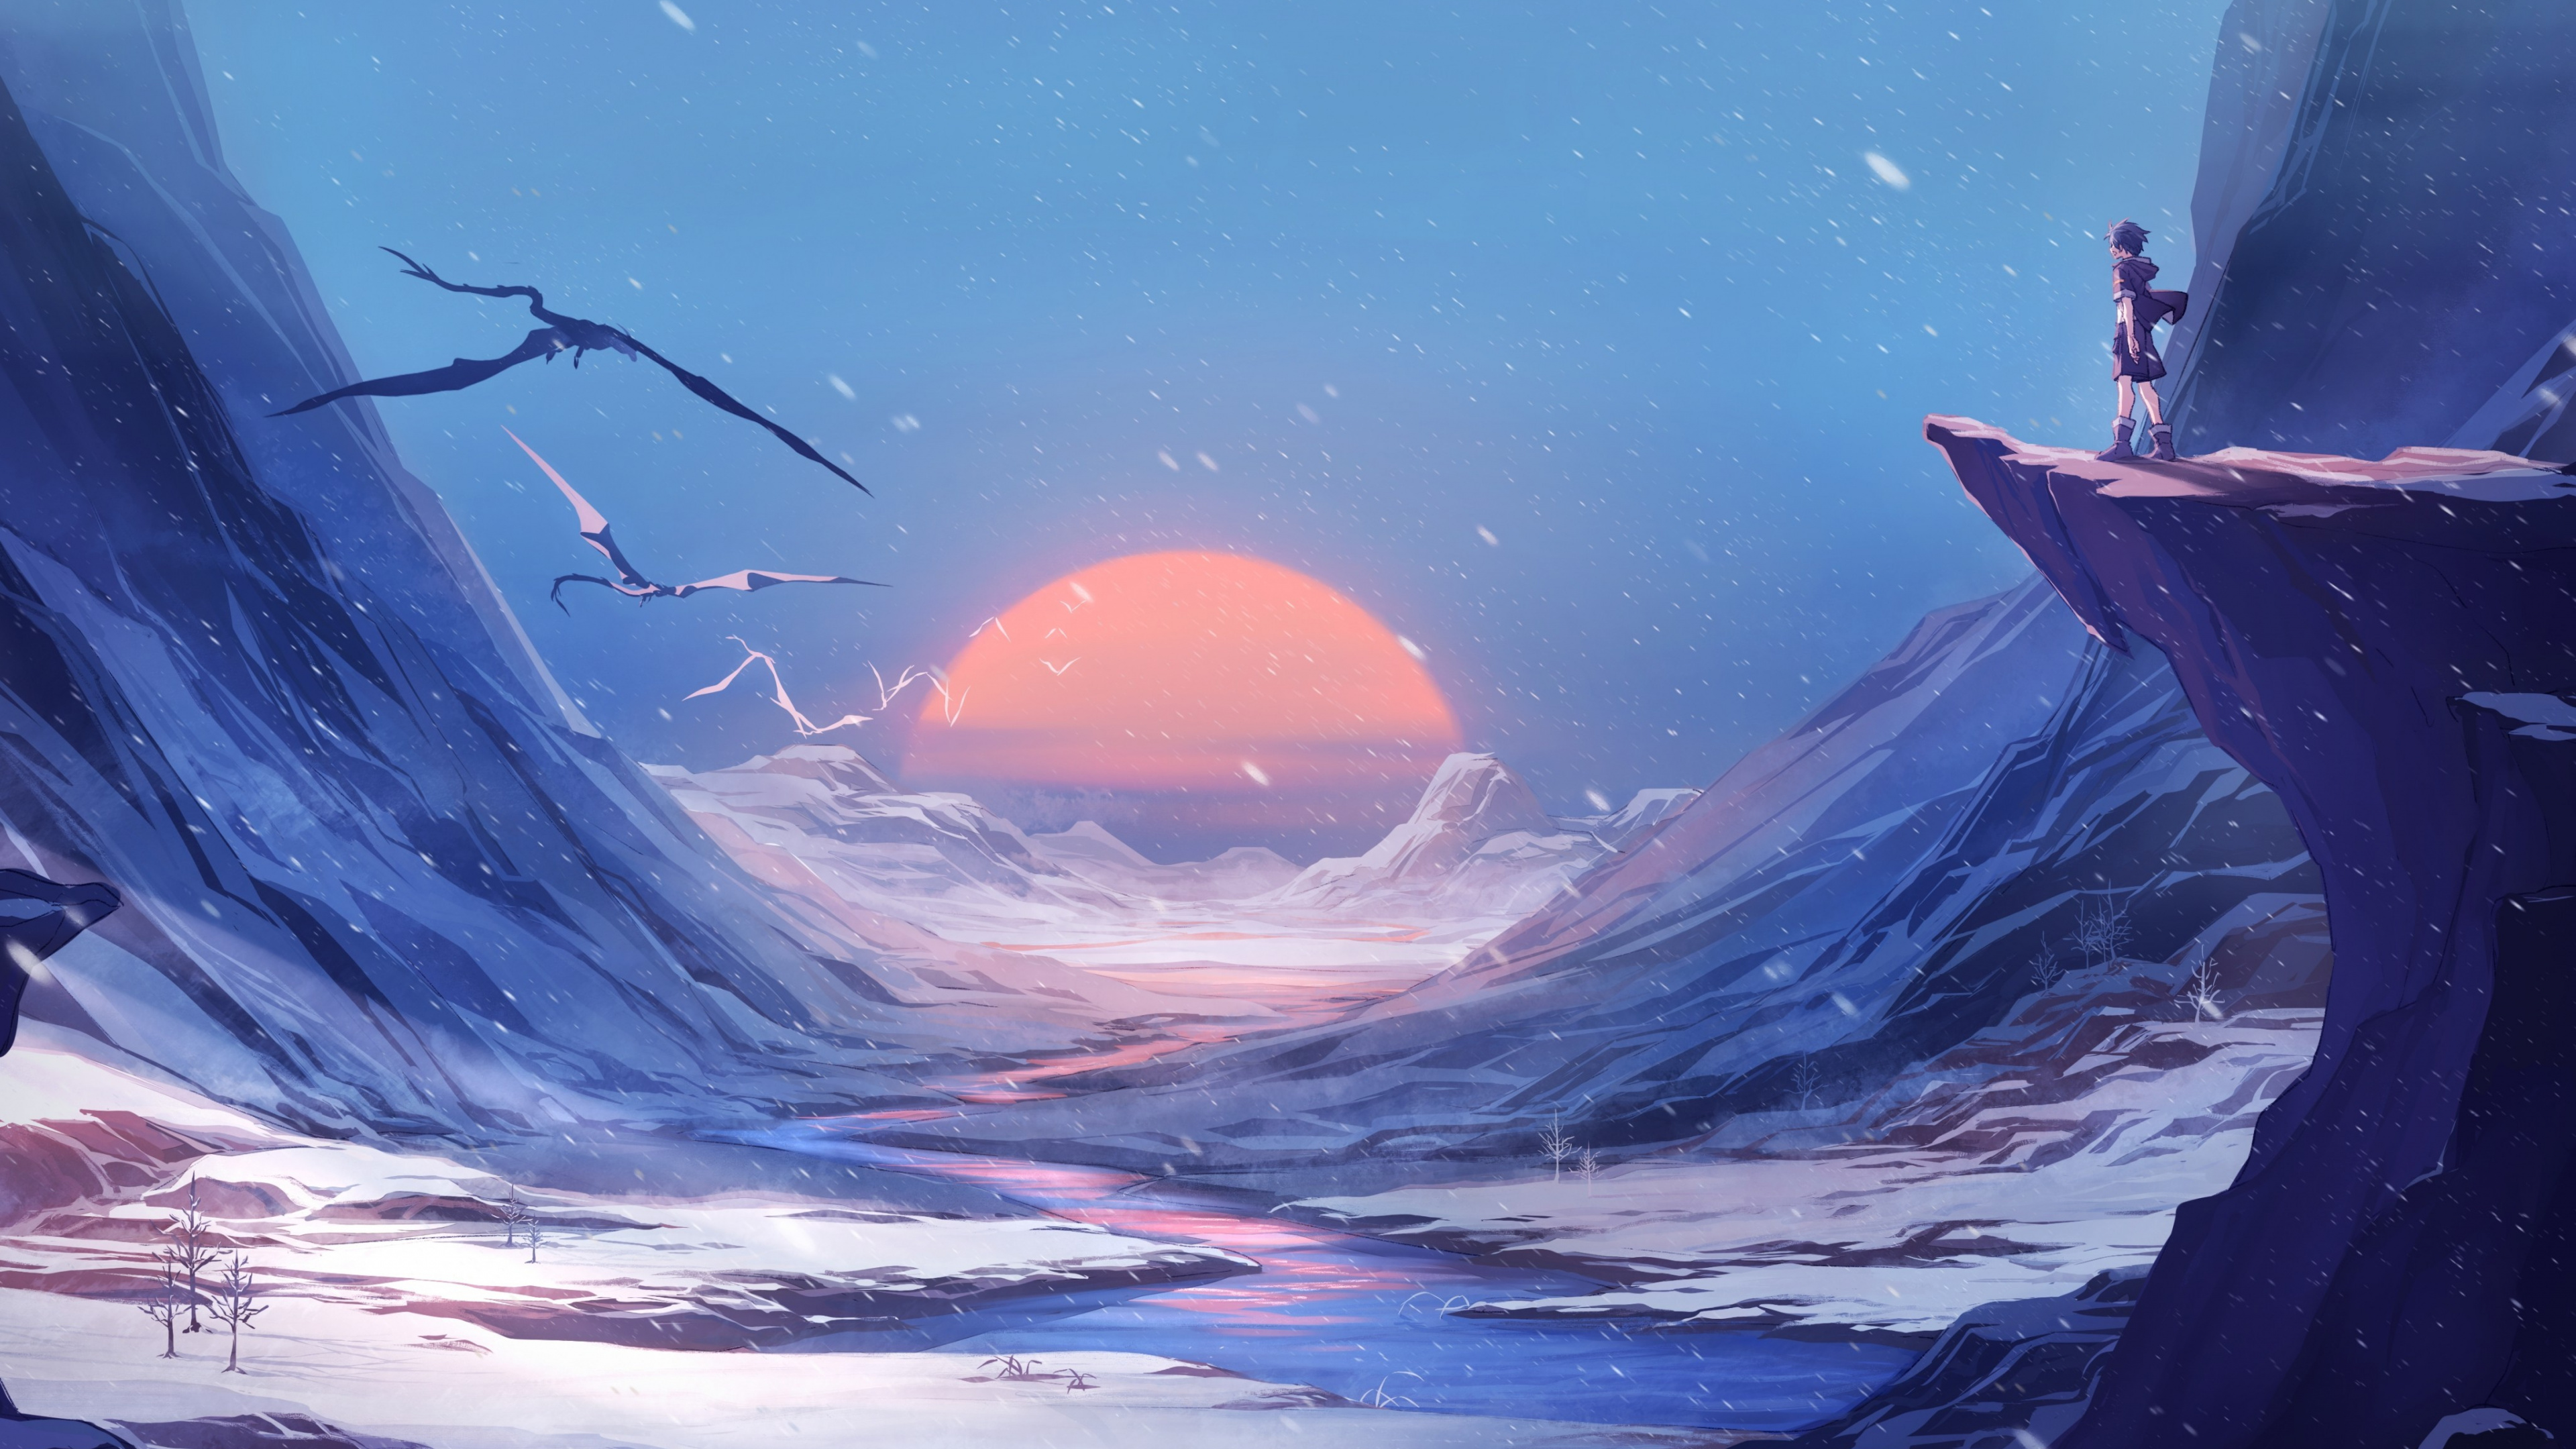 Montaña Cubierta de Nieve Bajo un Cielo Azul Durante el Día. Wallpaper in 3840x2160 Resolution